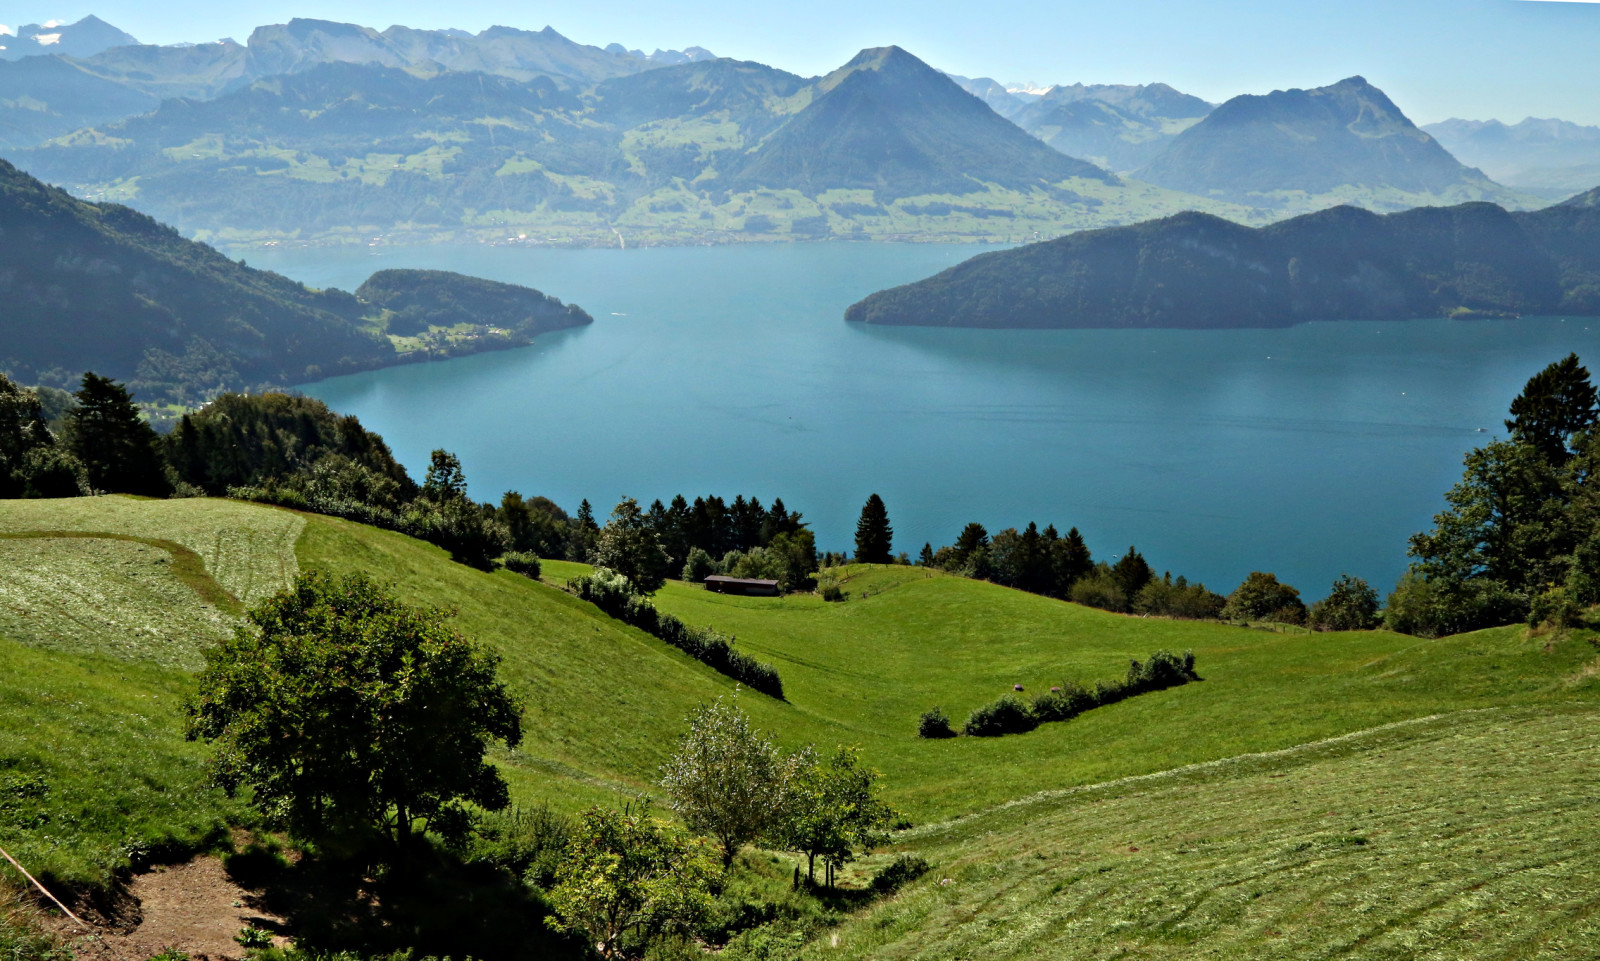 ประเทศสวิสเซอร์แลนด์, ทะเลสาป, สนาม, ภูเขา, ทุ่งหญ้า, ทะเลสาบลูเซิร์น